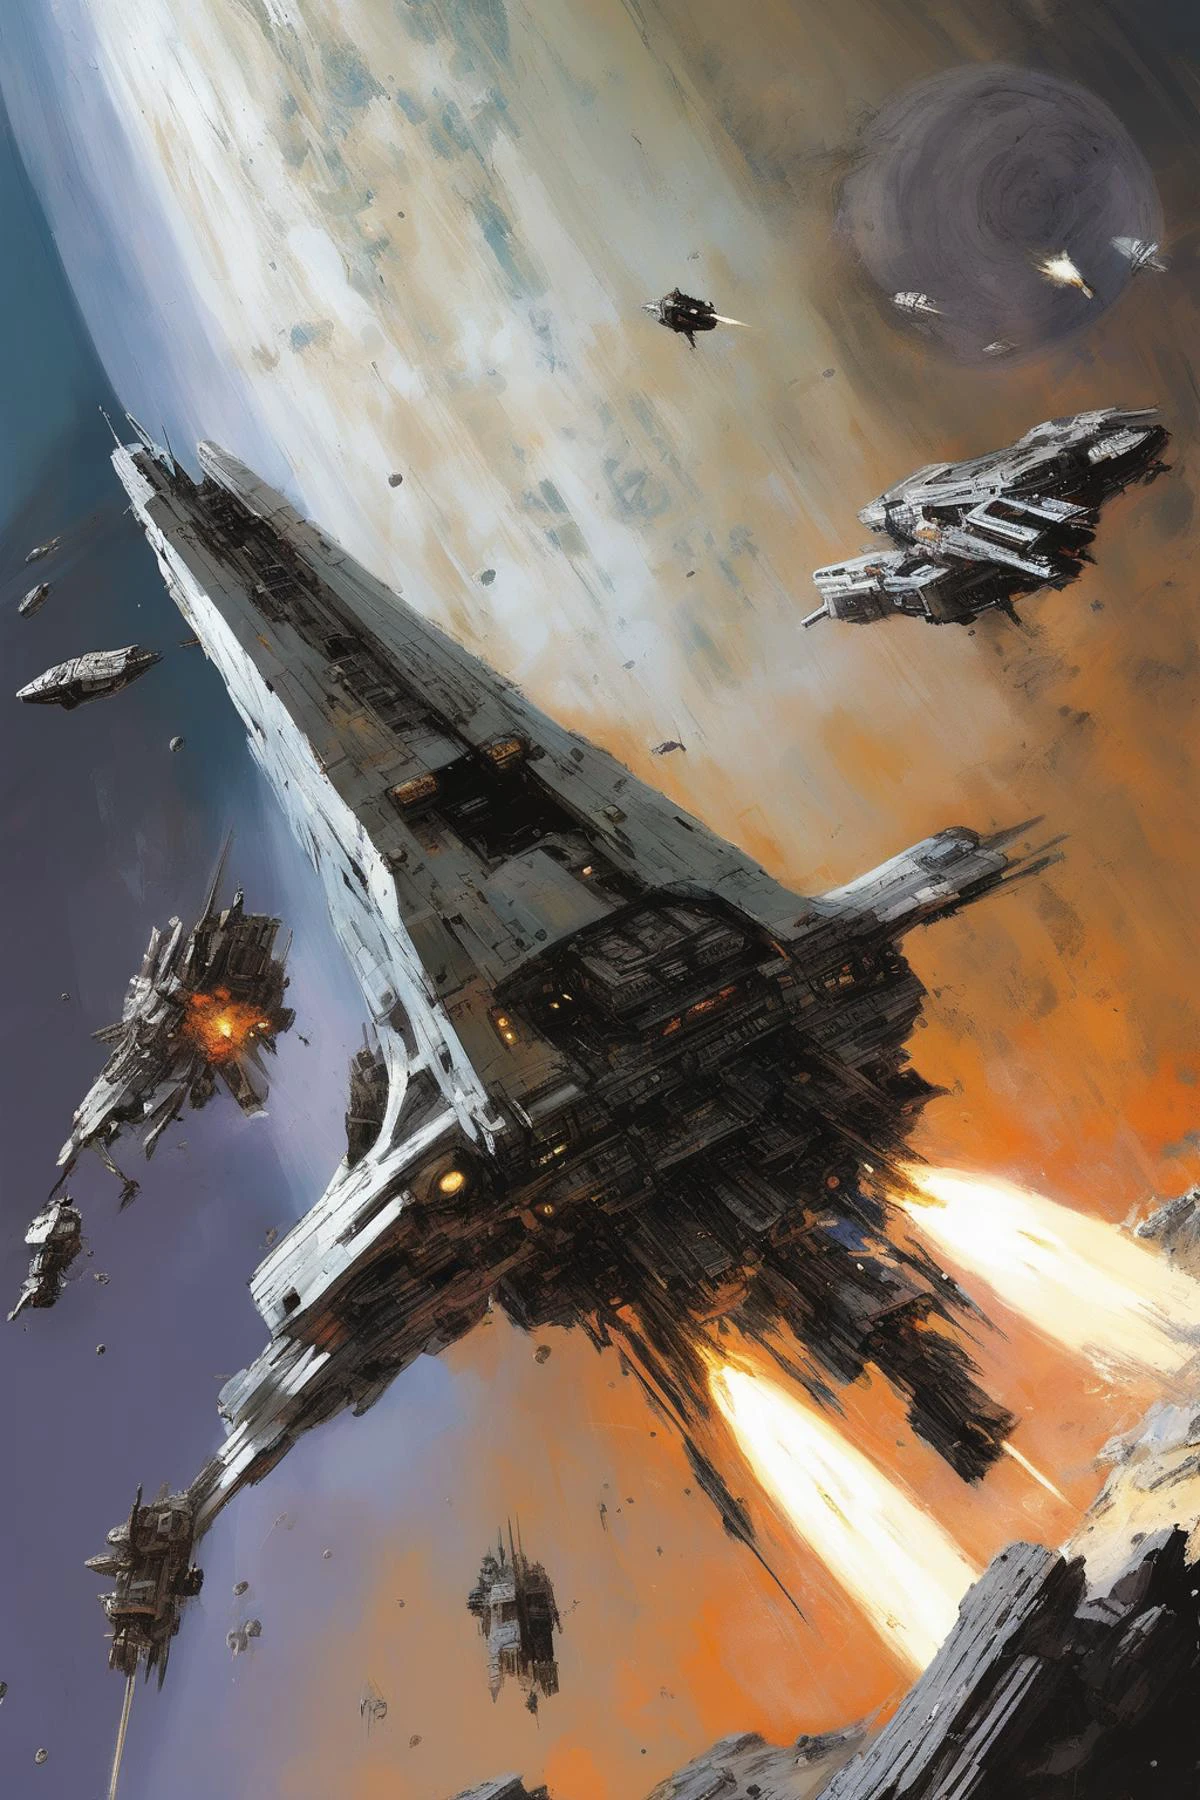 John Berkey Style - ein beschädigtes silbernes Dreadnought-Raumschiff feuert Waffen in einer massiven Weltraumschlacht ab, vor einem zerfallenden Planeten im Stil von John Berkey in Dreiviertelperspektive